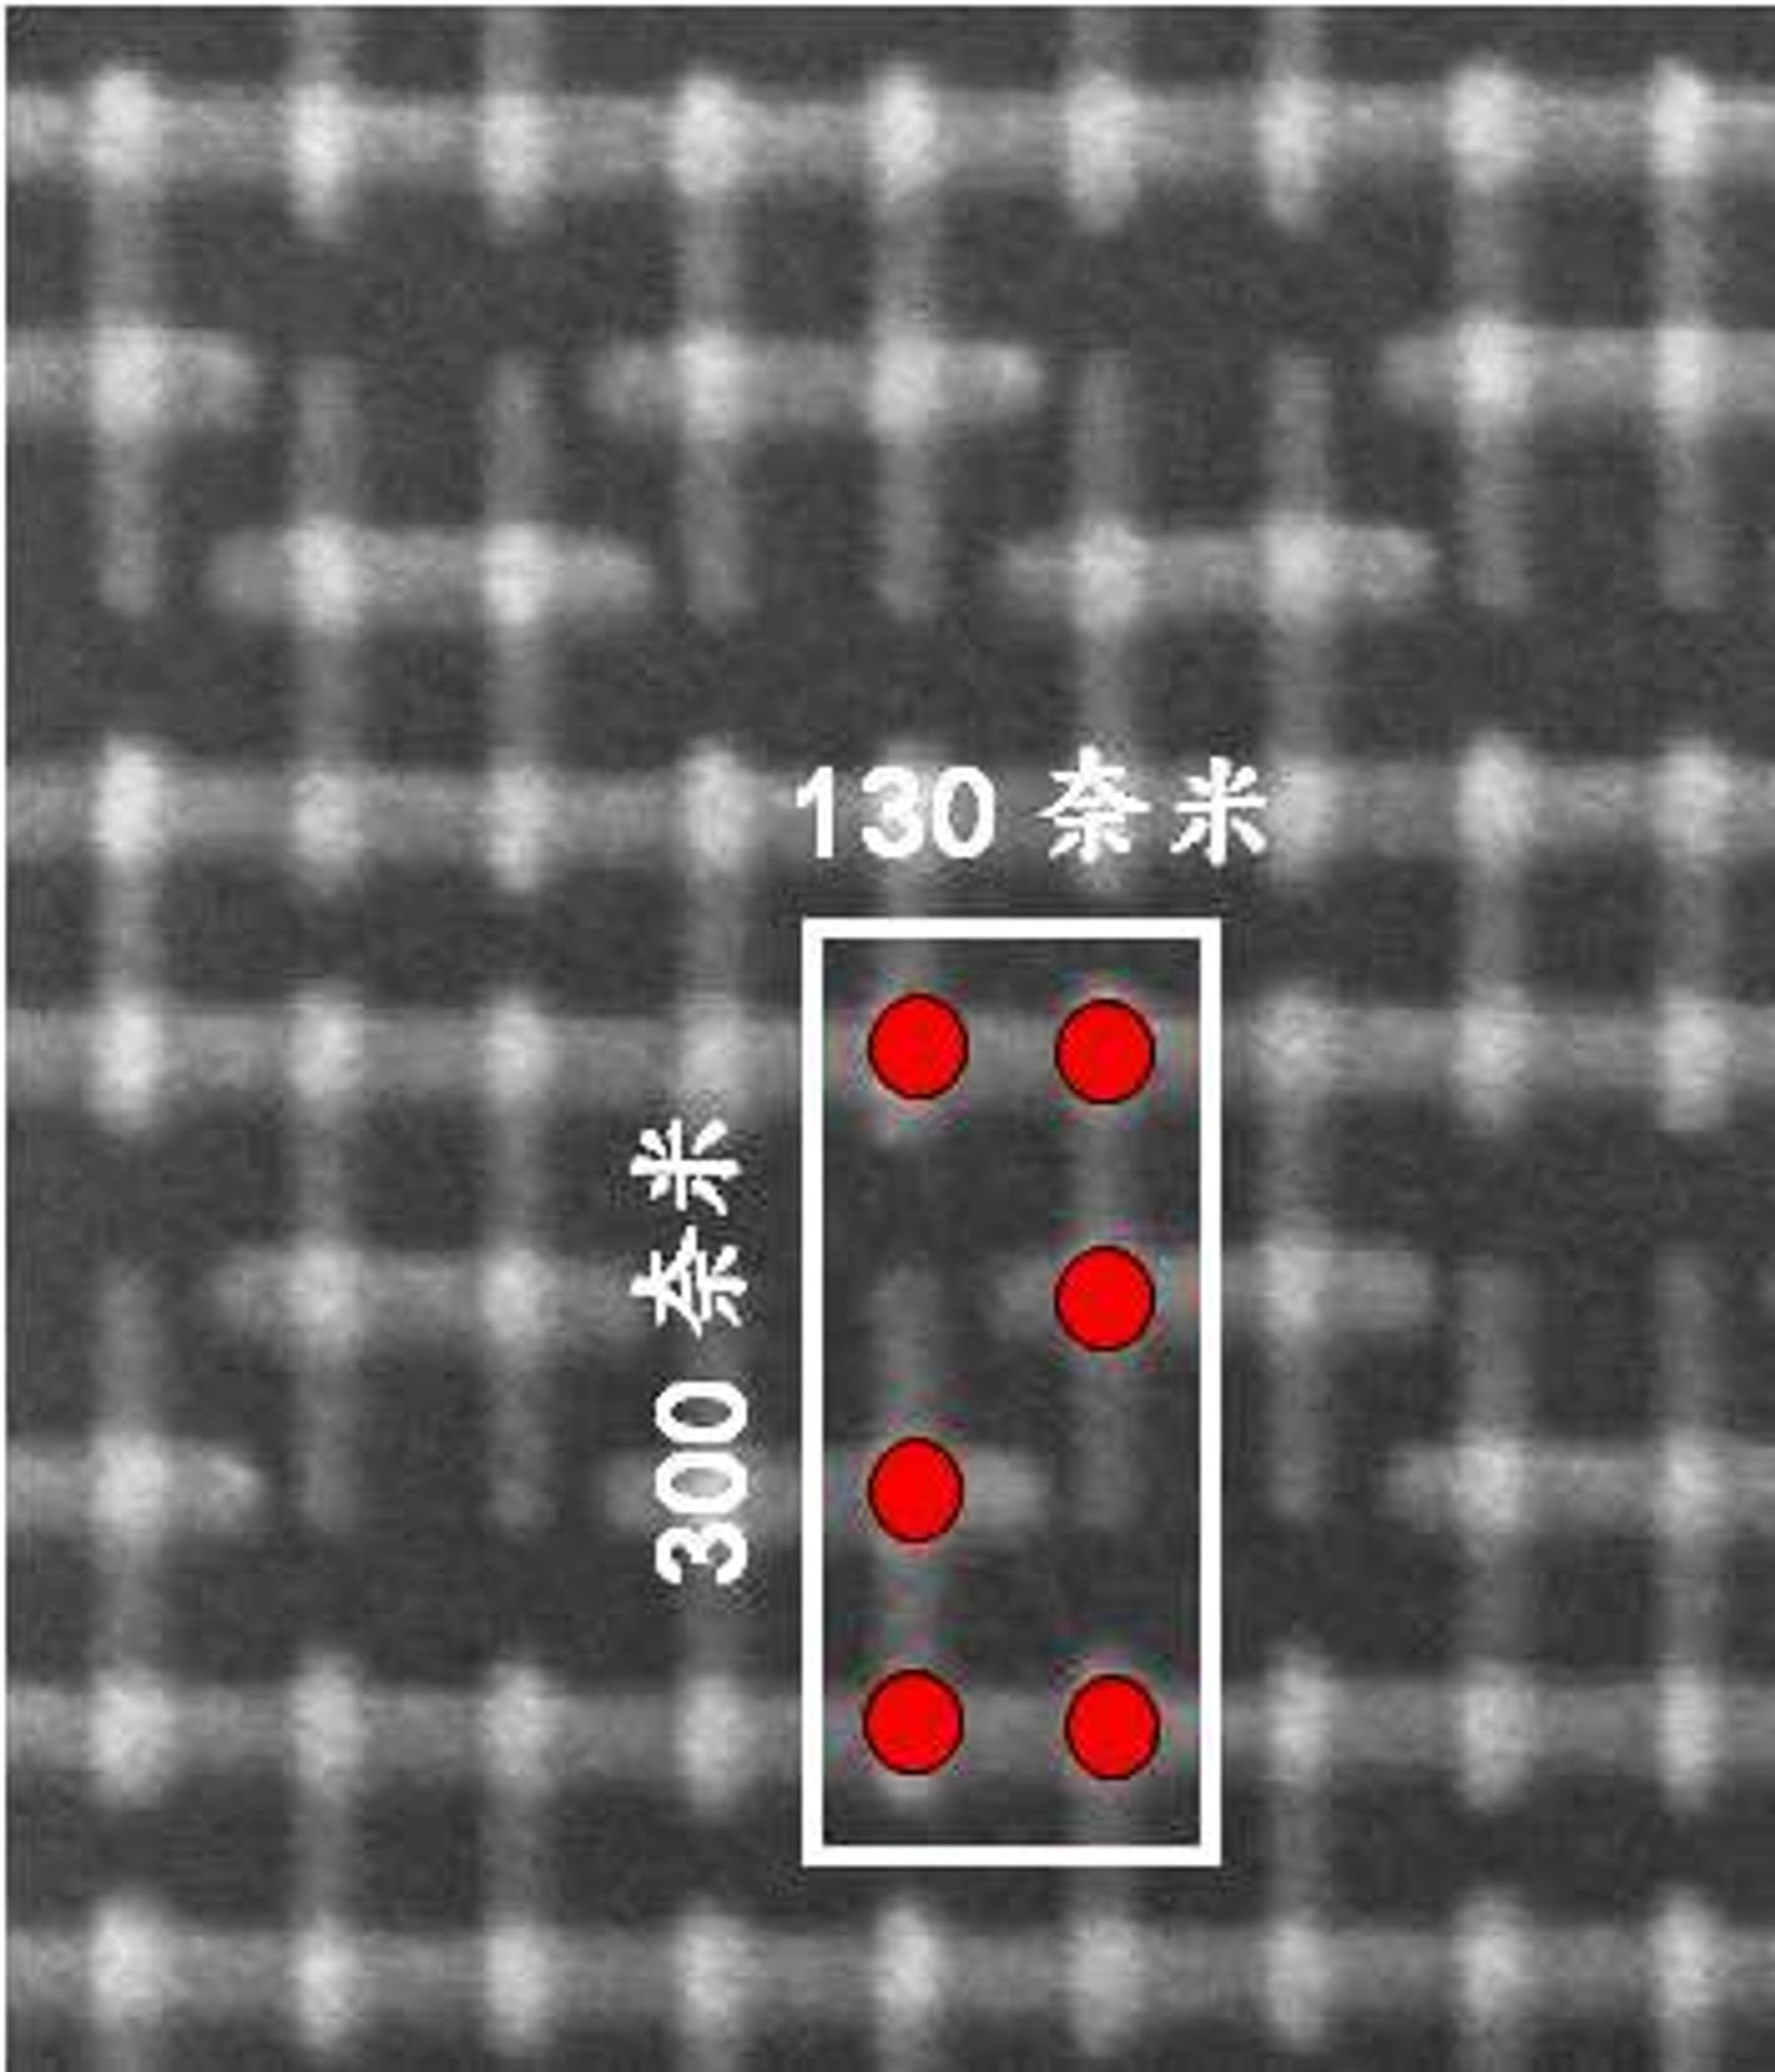 SRAM-celle laget med 16 nm prosessteknologi. Innenfor den hvite rammen er det seks transistorer. Størrelsen på enheter gjør at det vil være plass til 15 milliarder transistorer i en kvadratcentimeter-stor brikke, omtrent ti ganger så mye som med 45 nm-teknologien som ofte brukes i dag. Samtidig ventes halvert strømforbruk. 